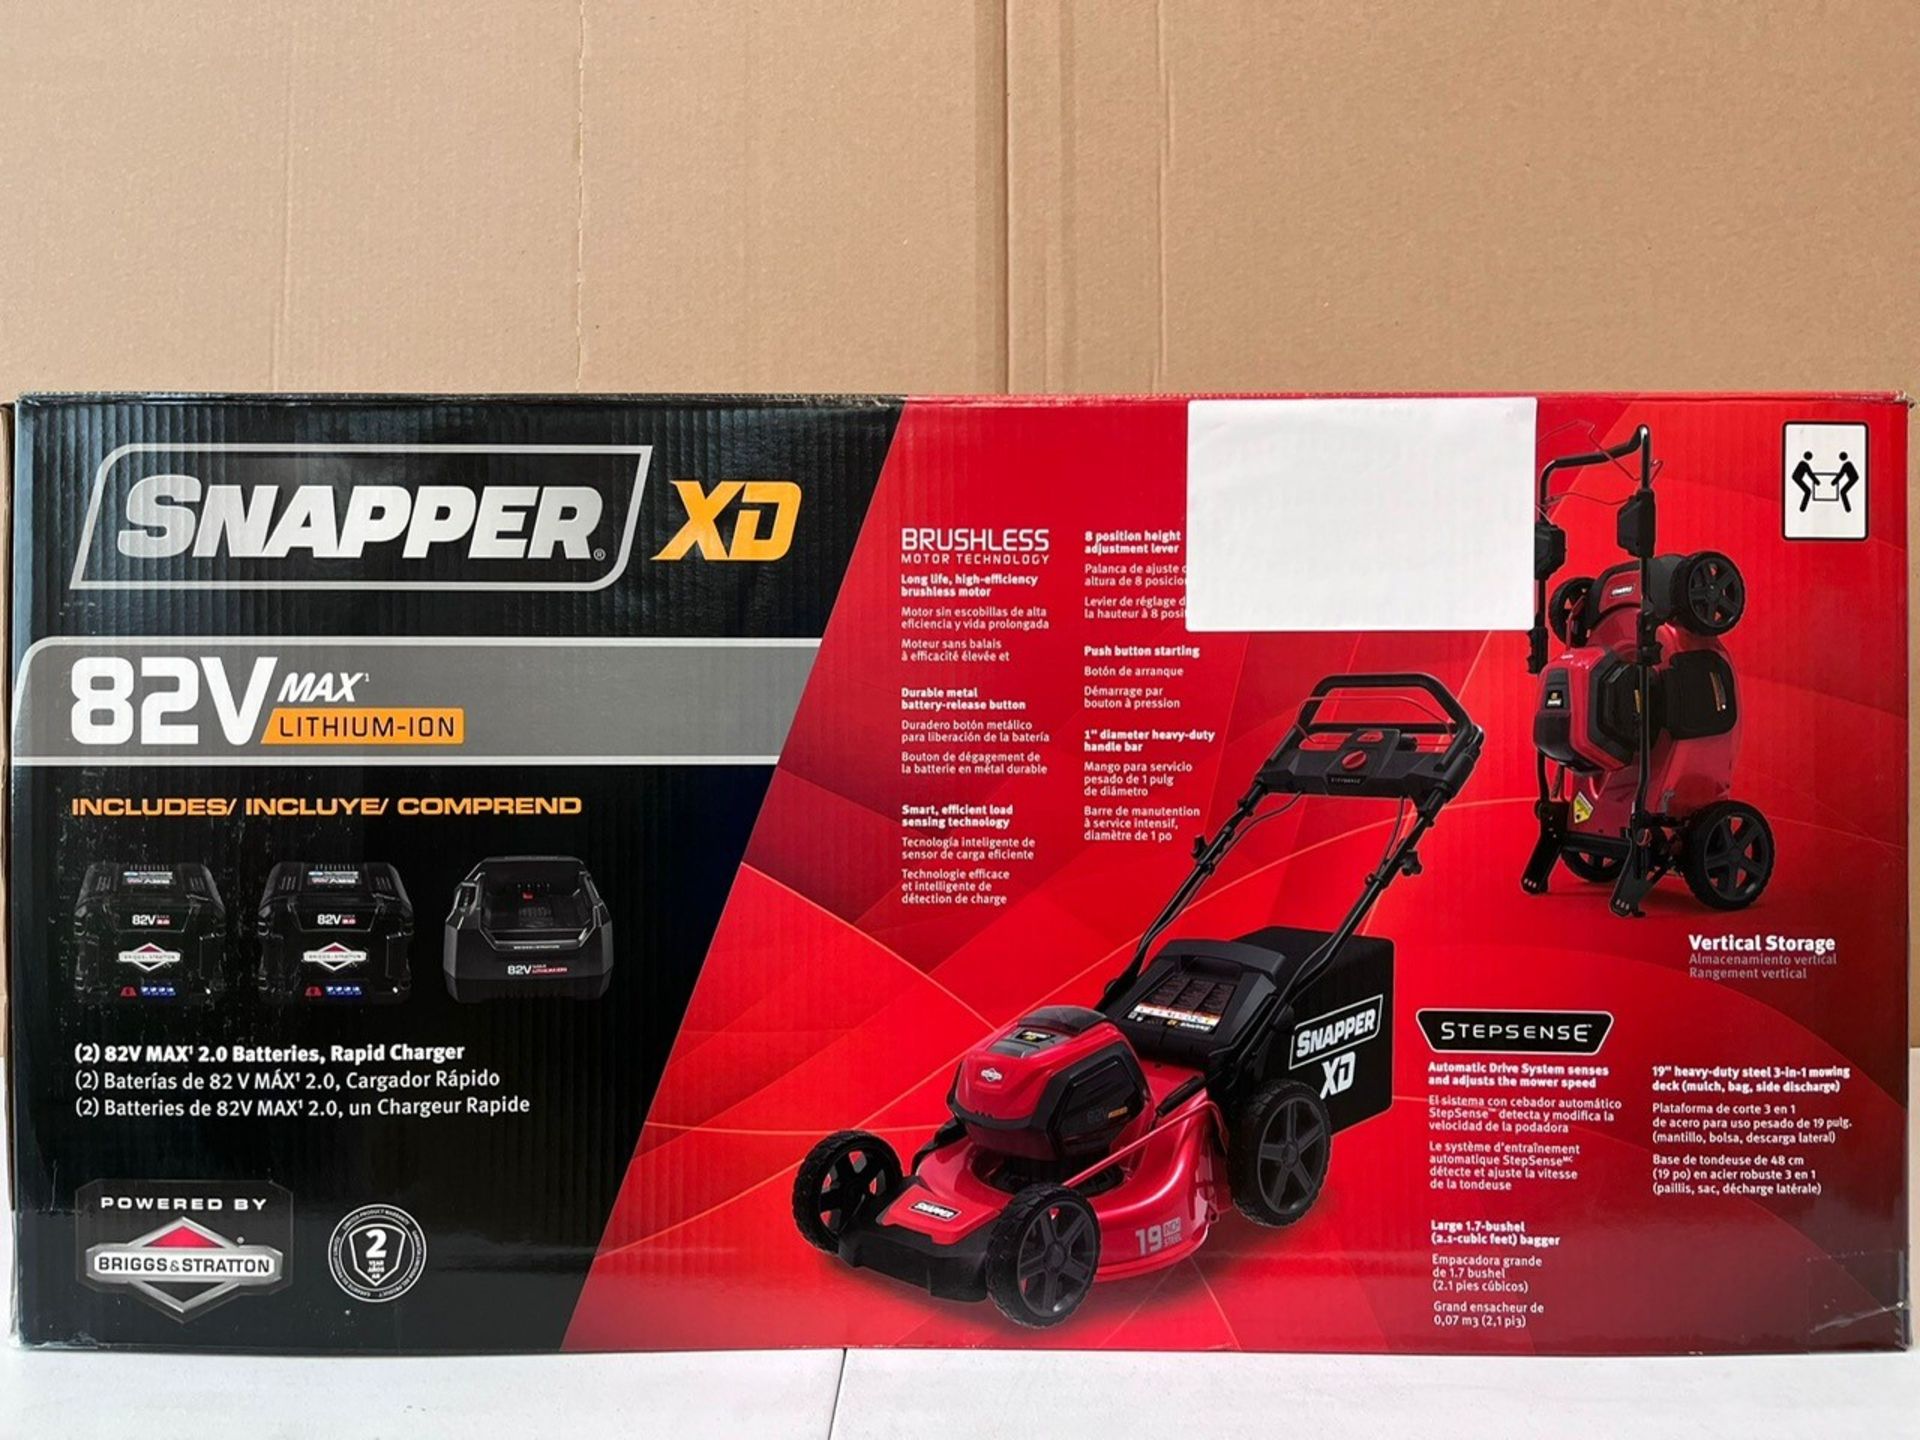 Snapper - Xd 82V 19" Stepsense Walk Mower Kit - Including Battery - Sxd19Sswm82K - Image 2 of 3